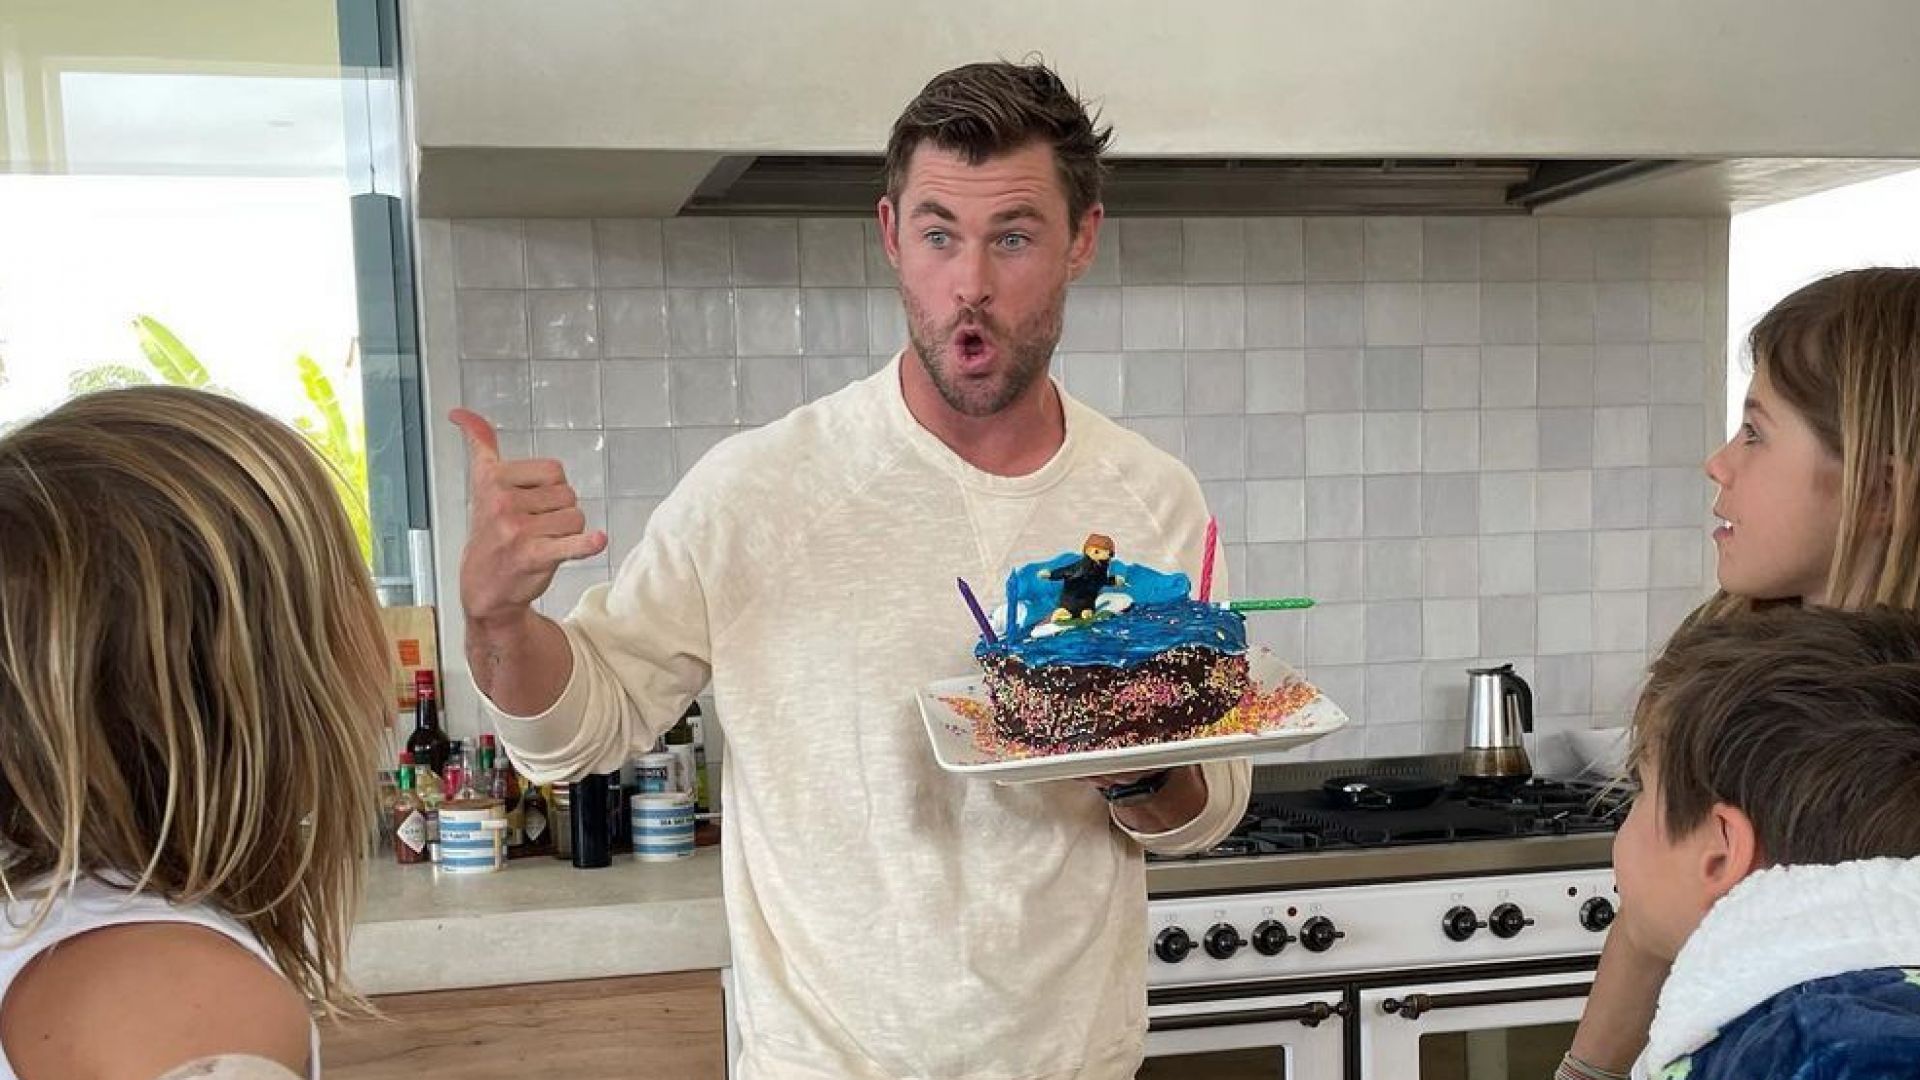 Децата на Крис Хемсуърт го изненадаха със собственоръчно направена торта за рождения му ден